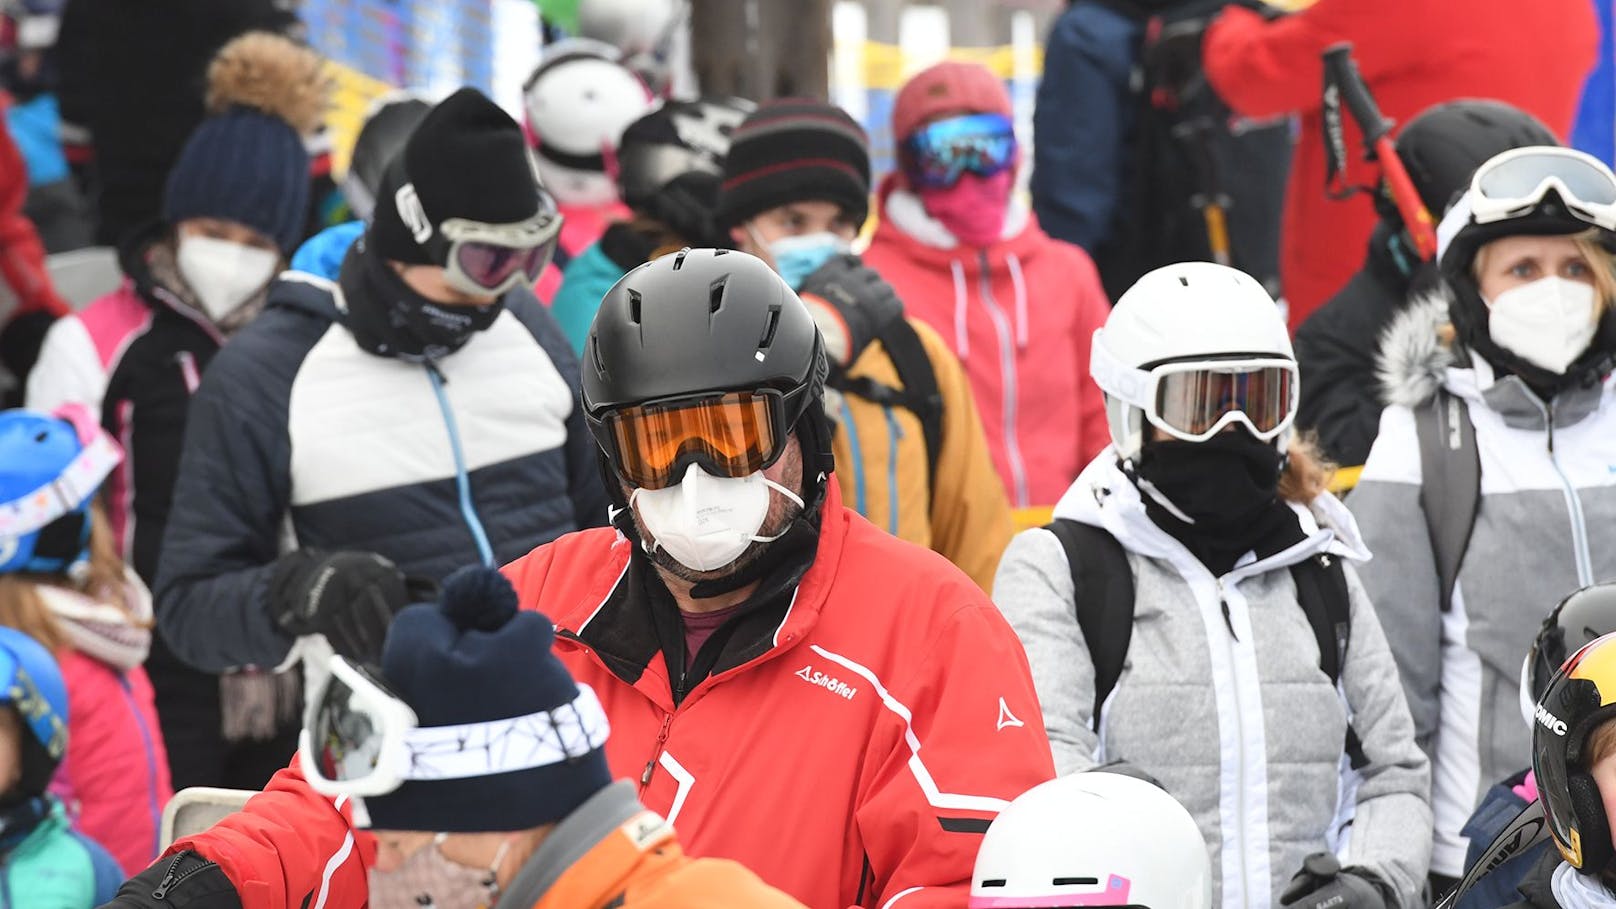 Für Après Ski gelten heuer strenge Regeln, in den Seilbahnen ist die Maske Pflicht.